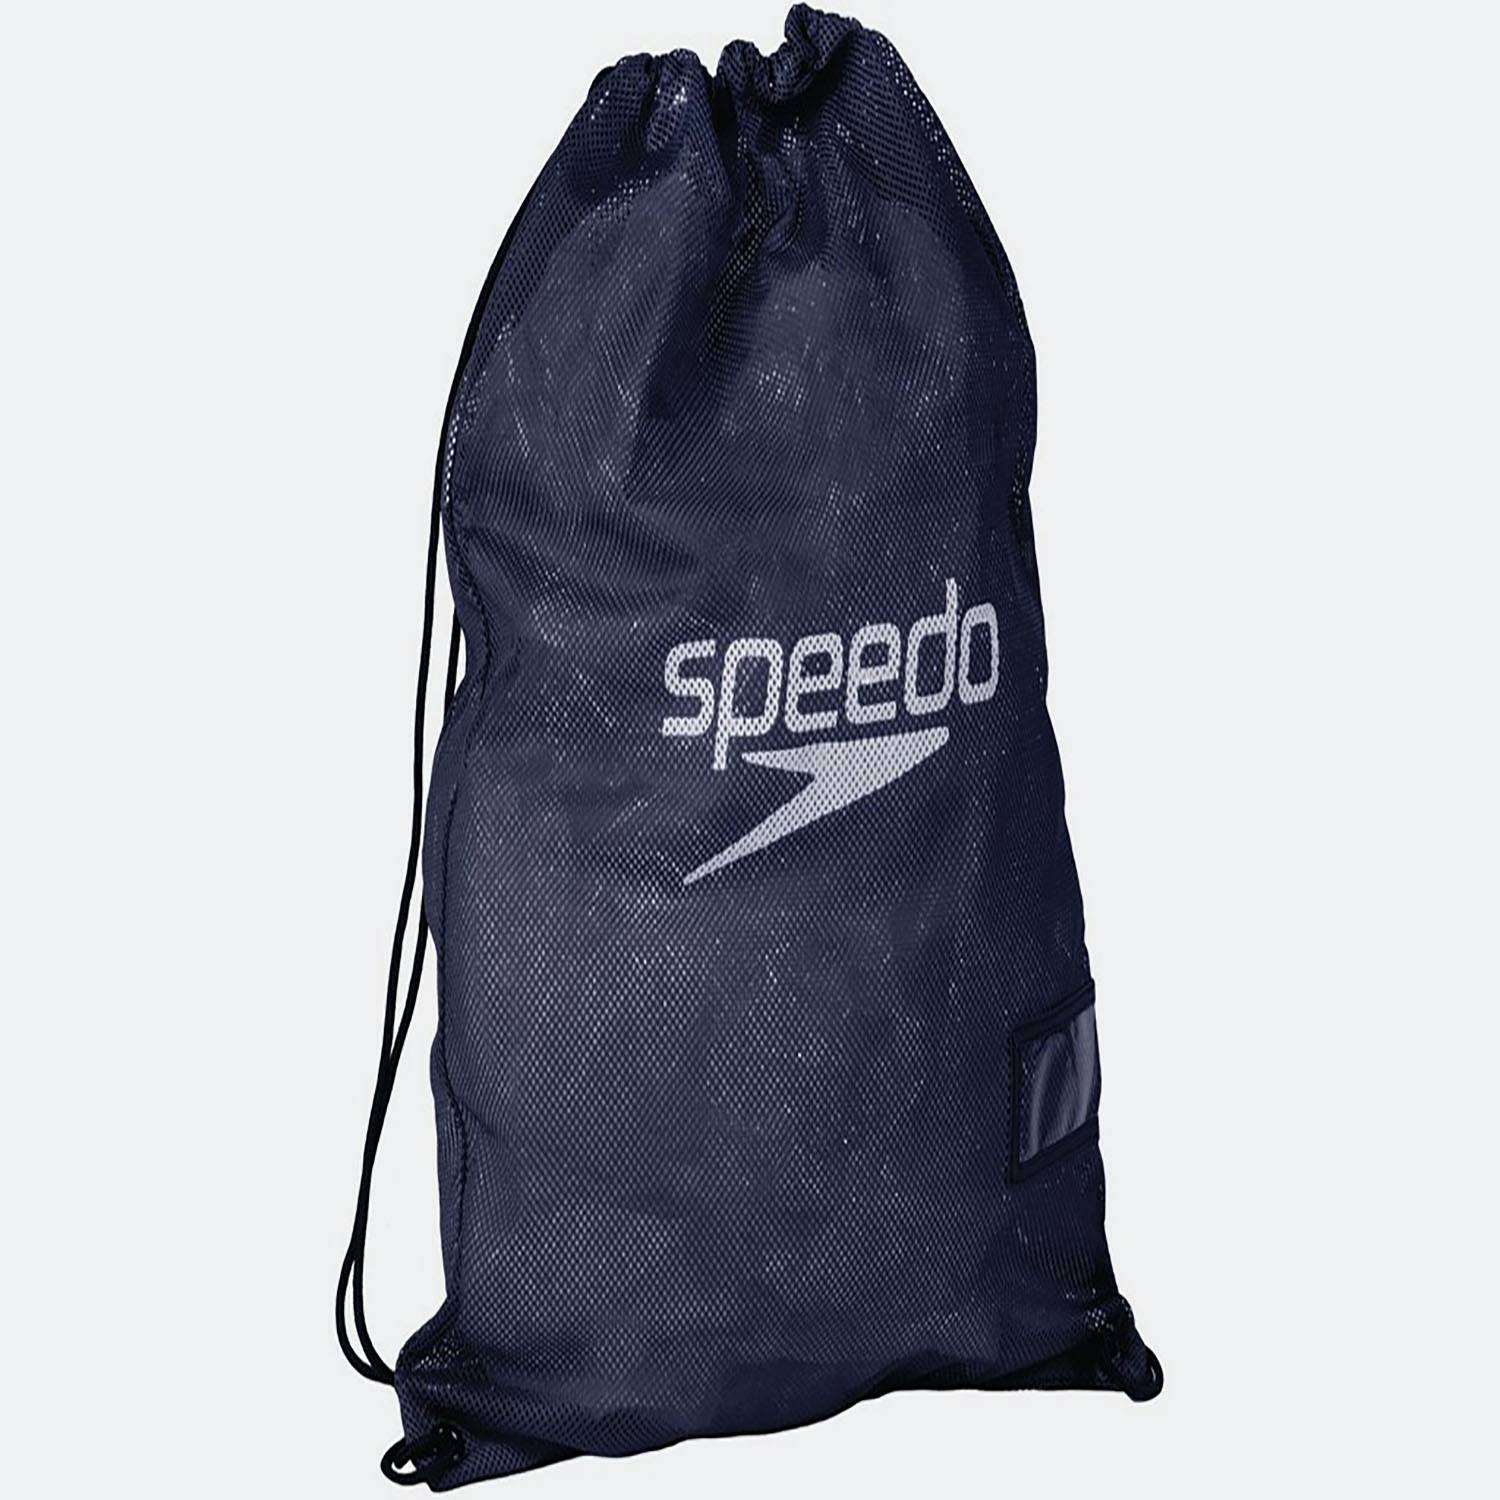 Speedo Equip Mesh Τσάντα | Medium (3163000003_1861)